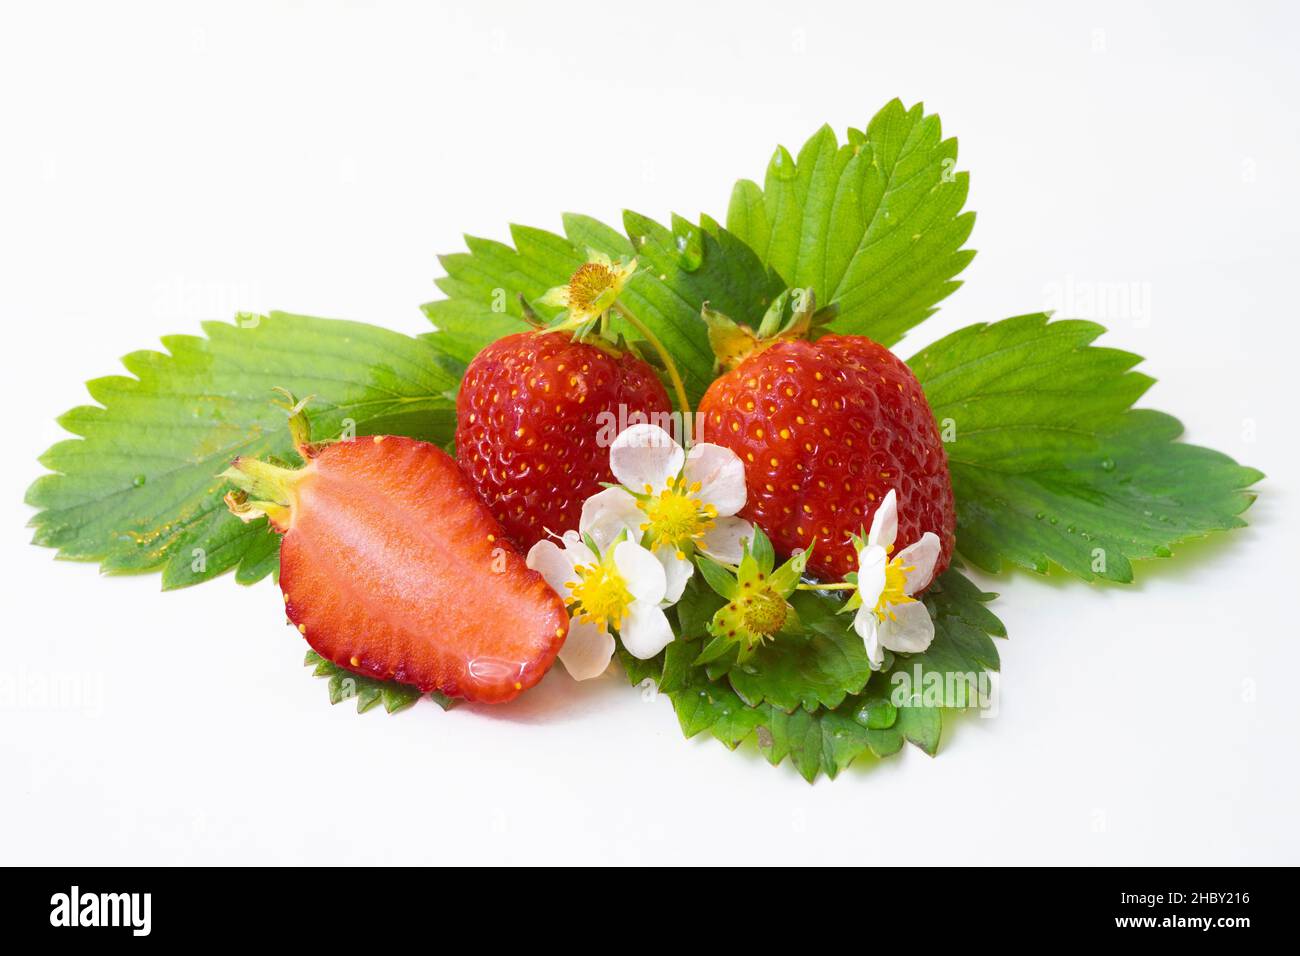 Erdbeeren auf grünen Blättern und weißen Blüten, isoliert auf weißem Hintergrund. Stockfoto